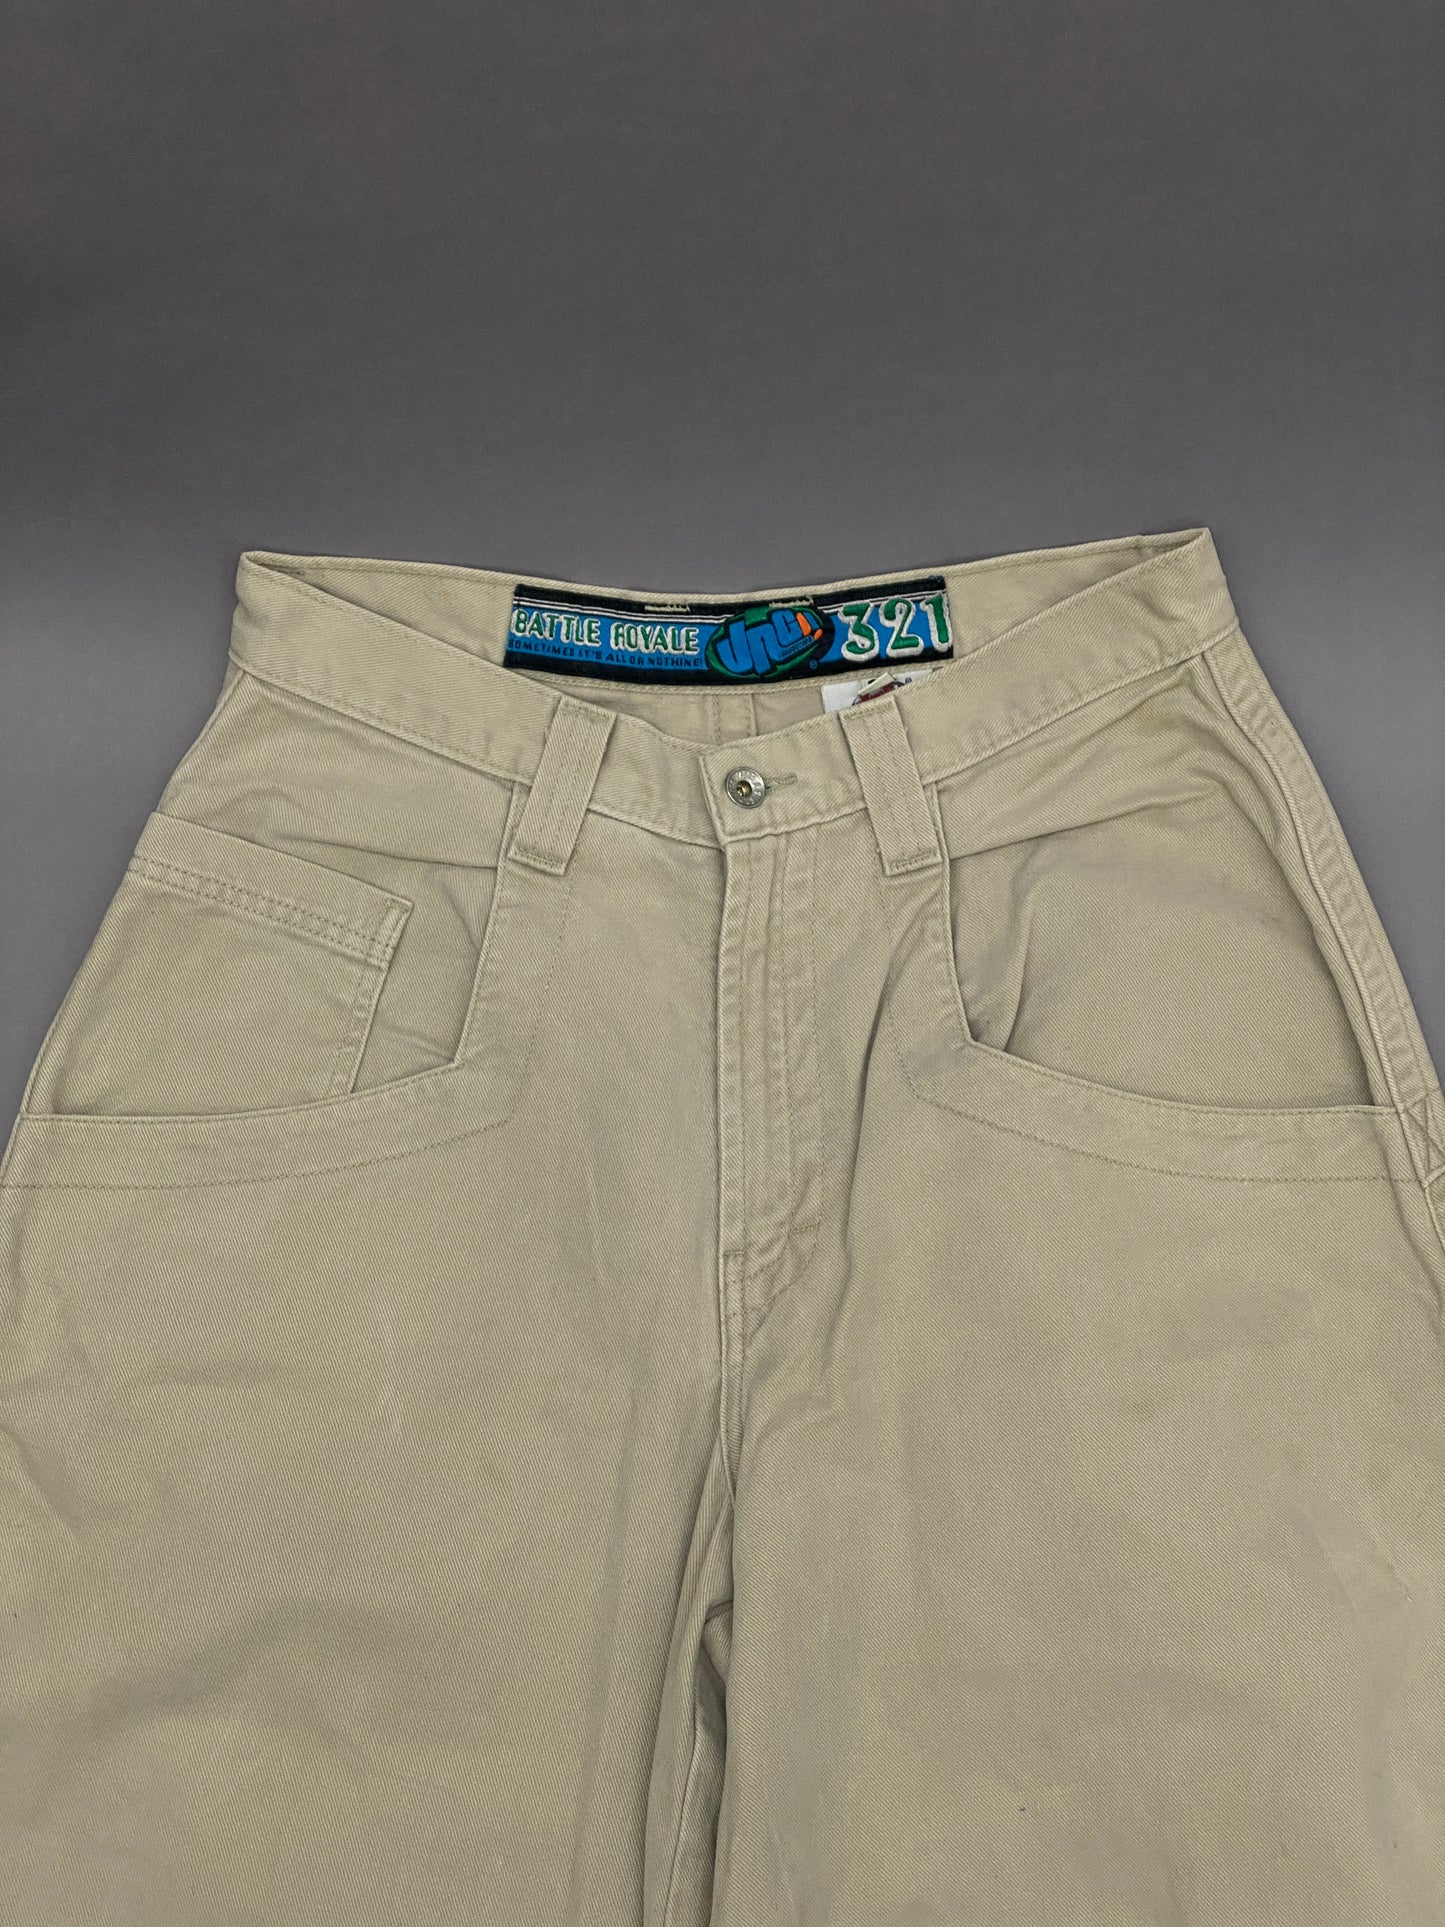 JNCO Jeans Battle Royale 321 Vintage Pants - 33